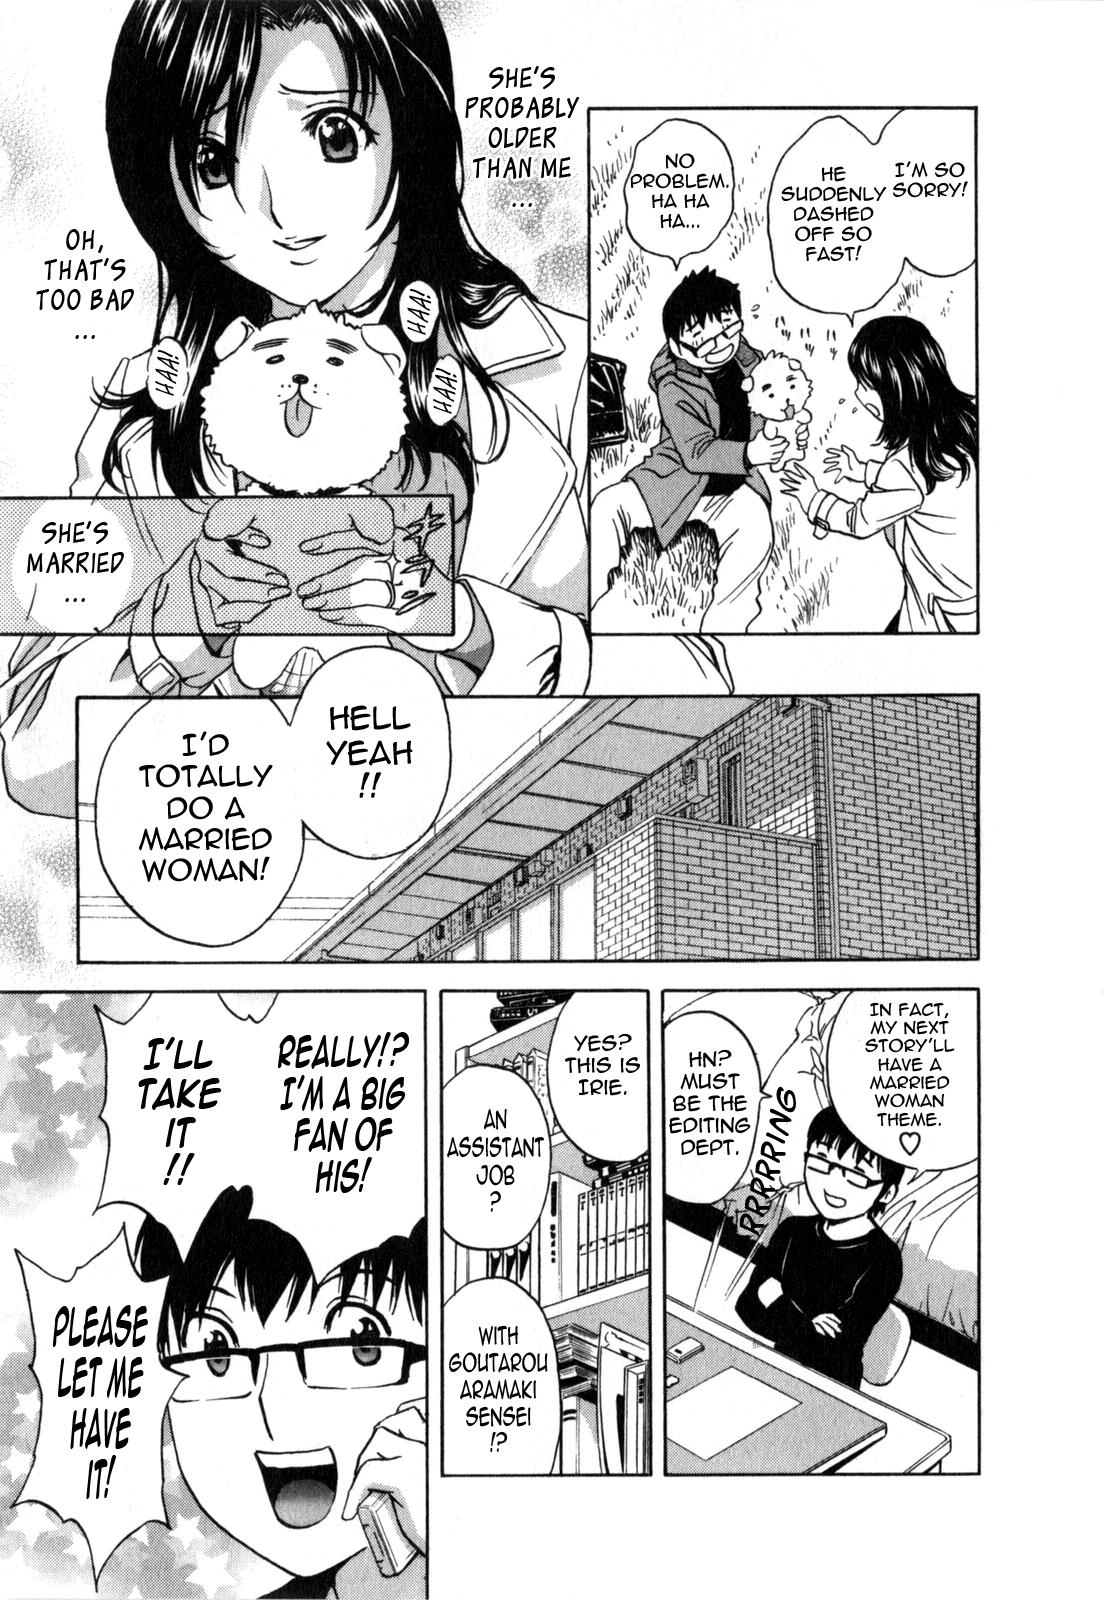 Manga no youna Hitozuma to no Hibi - Days with Married Women such as Comics. 11